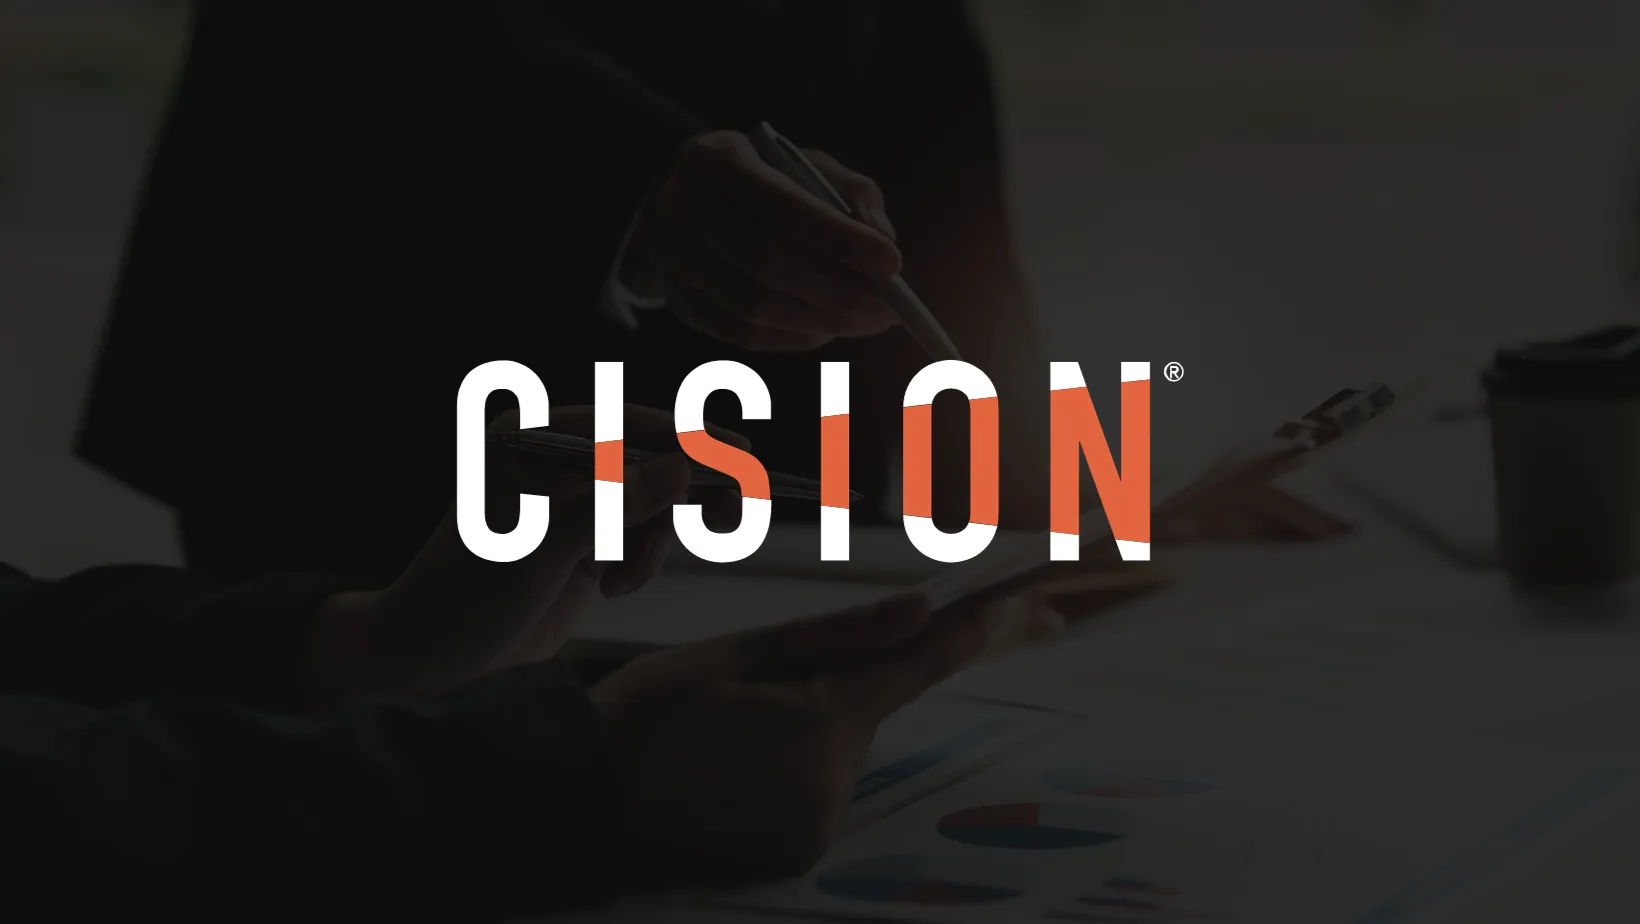 White Cision (PR Newswire) logo on a dark background.